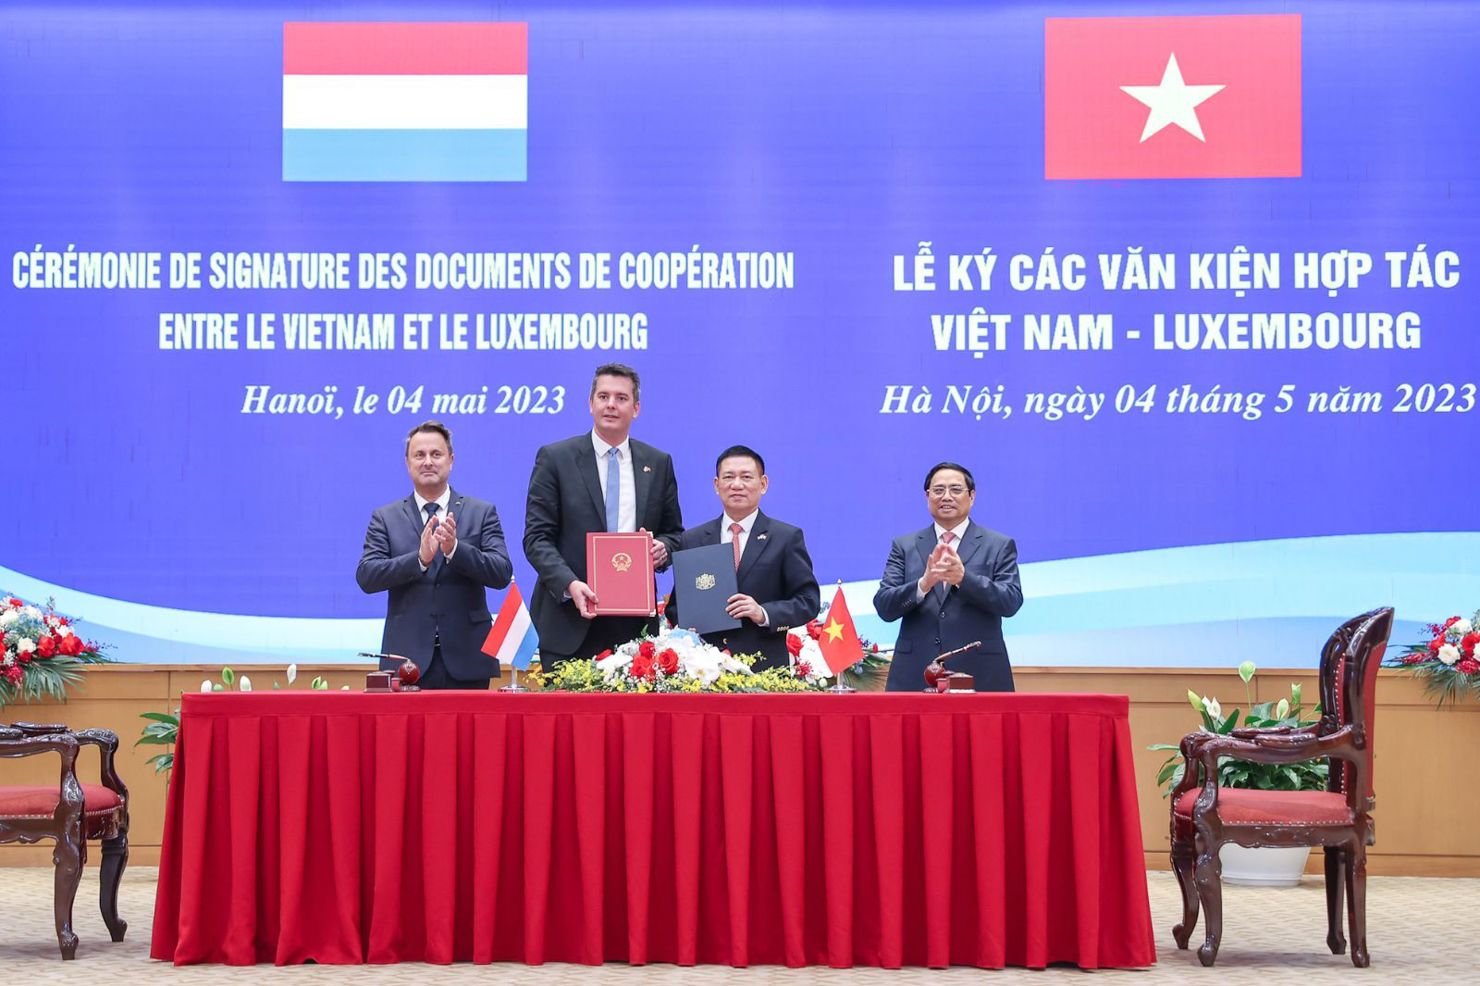 Thừa ủy quyền của Chính phủ Việt Nam, Bộ trưởng Bộ Tài chính Hồ Đức Phớc ký kết thỏa thuận hợp tác trong lĩnh vực tài chính với Luxembourg.